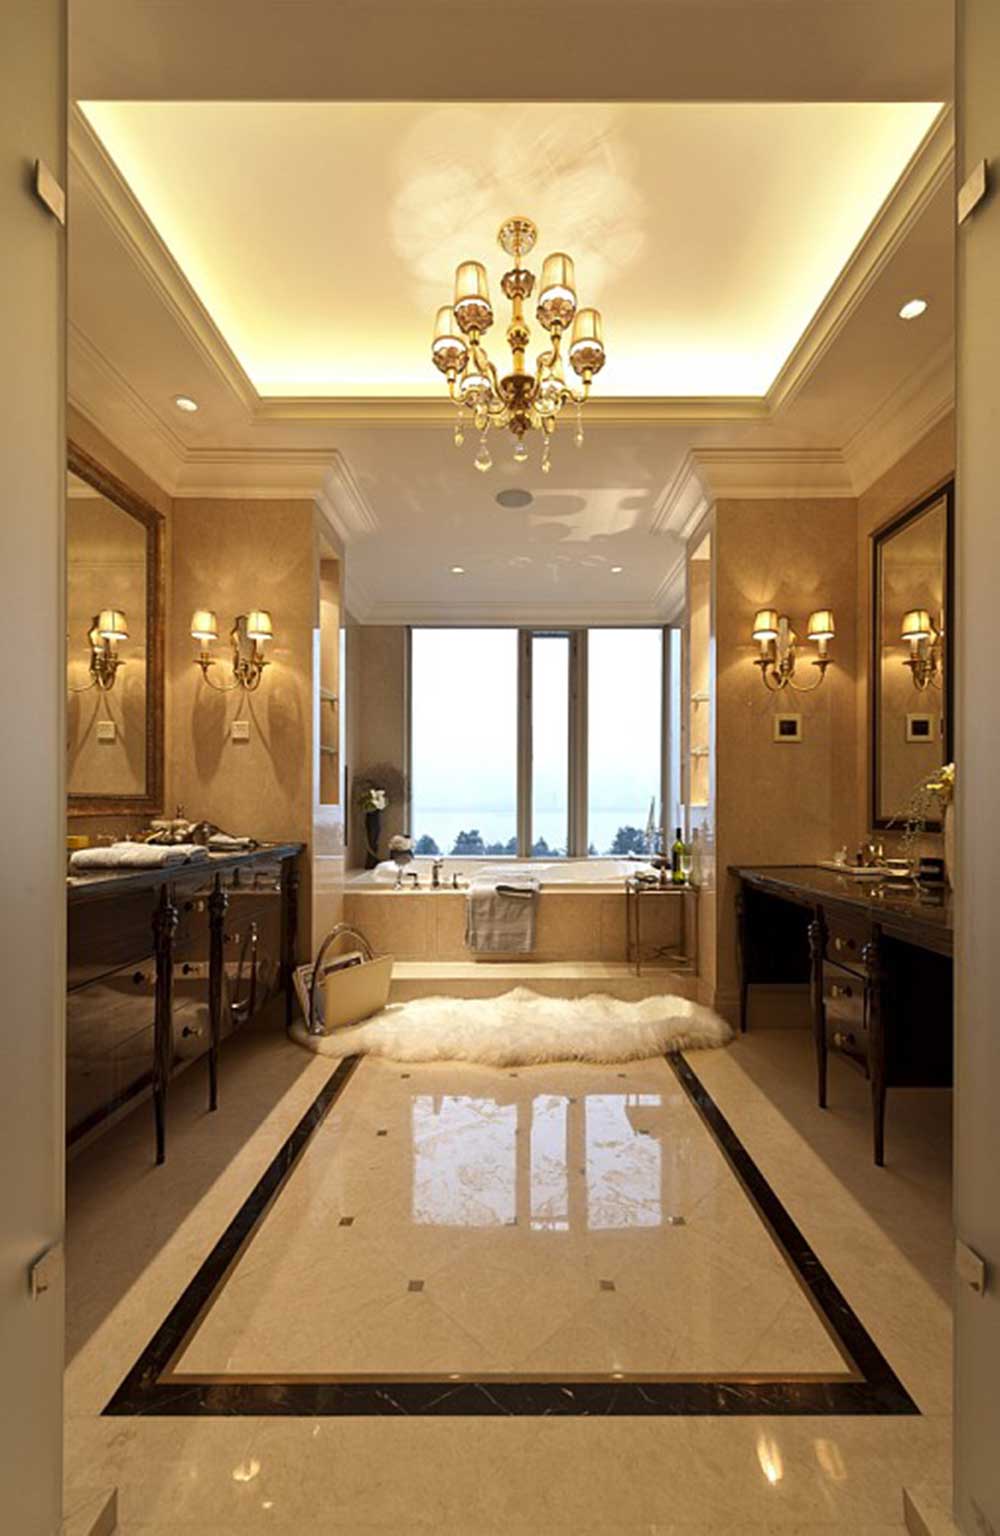 卫生间的空间很大，有一个靠窗浴缸，再往外有梳妆台和洗漱区，功能分区很清晰。壁灯增加了欧式的奢华感受。